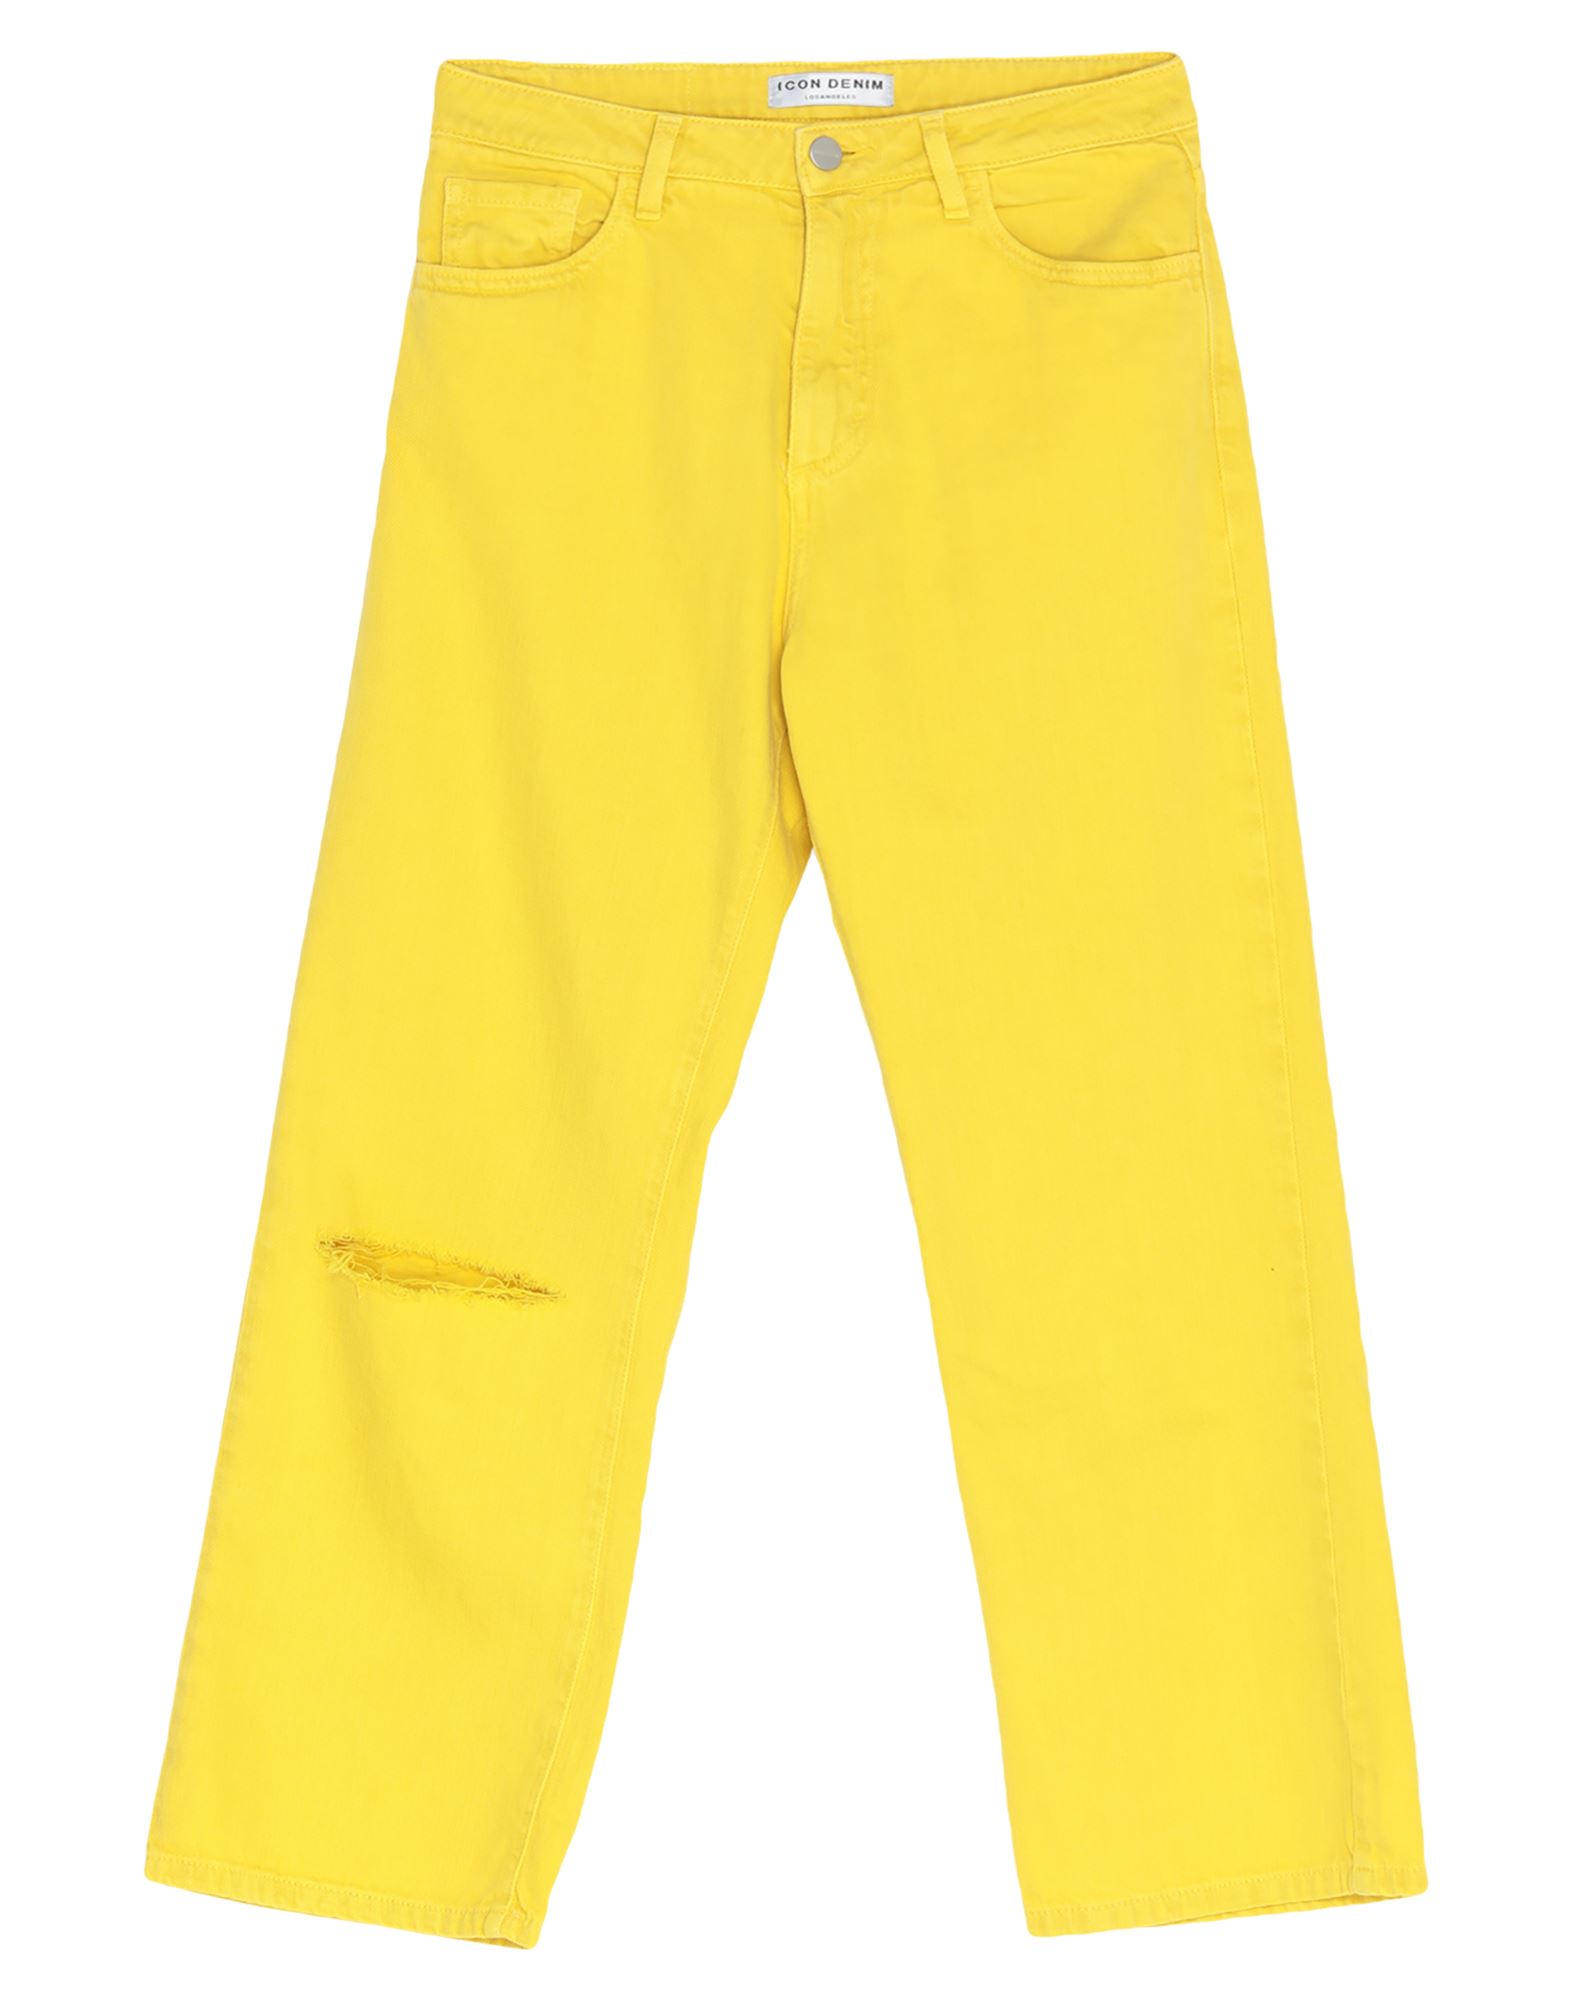 ICON DENIM Cropped Jeans Damen Gelb von ICON DENIM